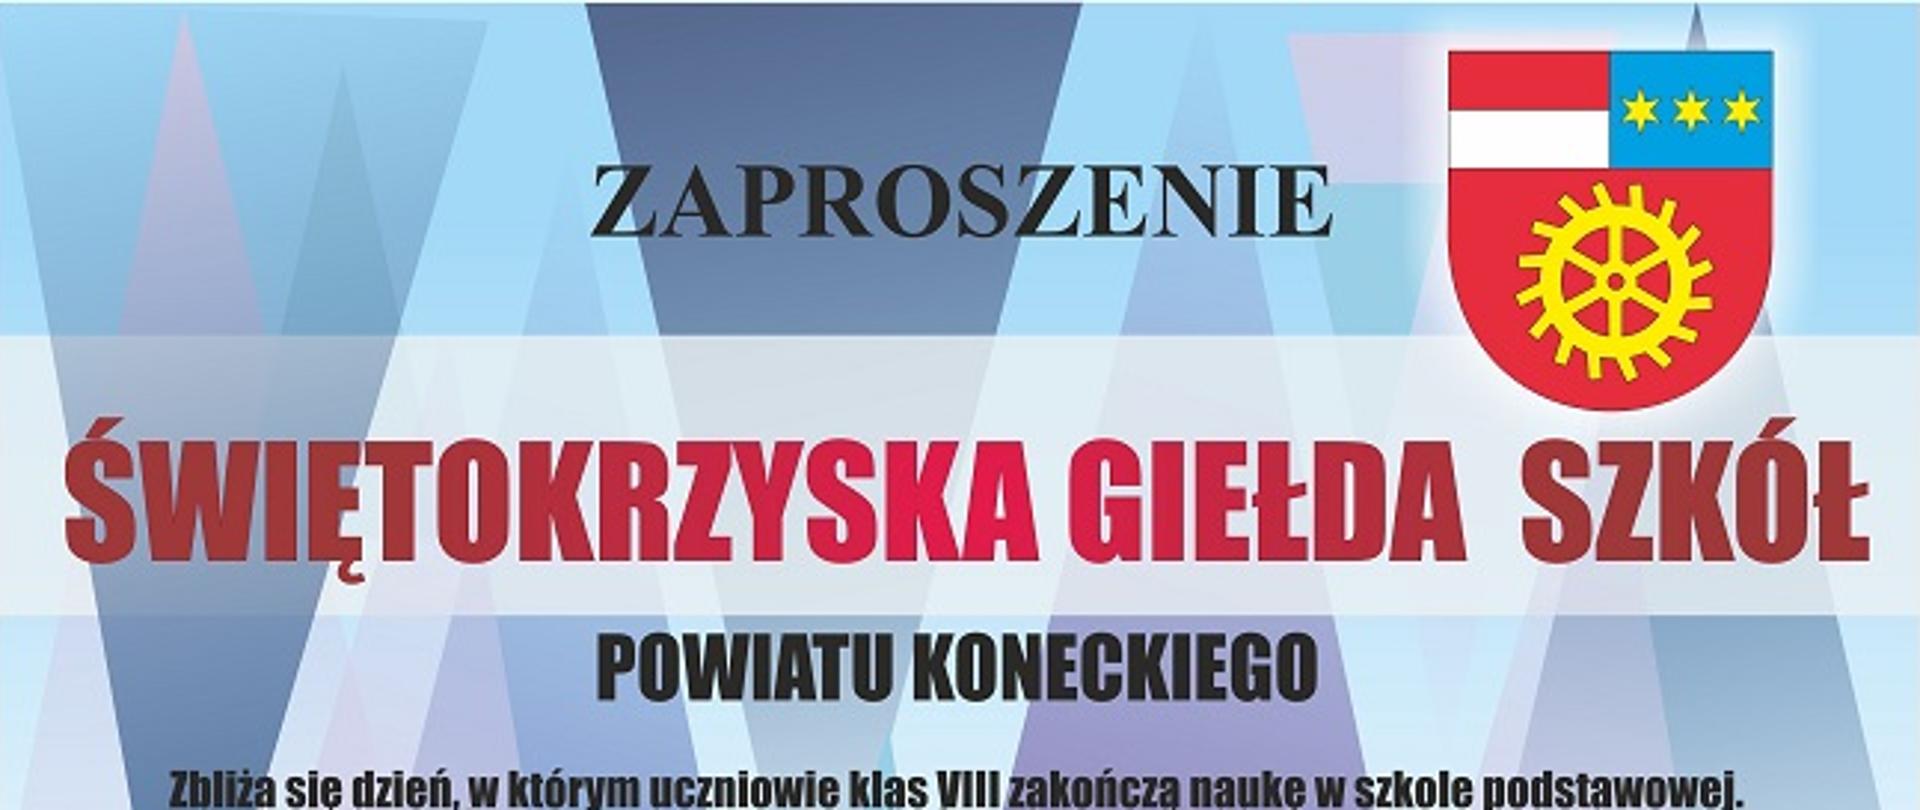 Zaproszenie – Świętokrzyska Giełda Szkół Powiatu Koneckiego